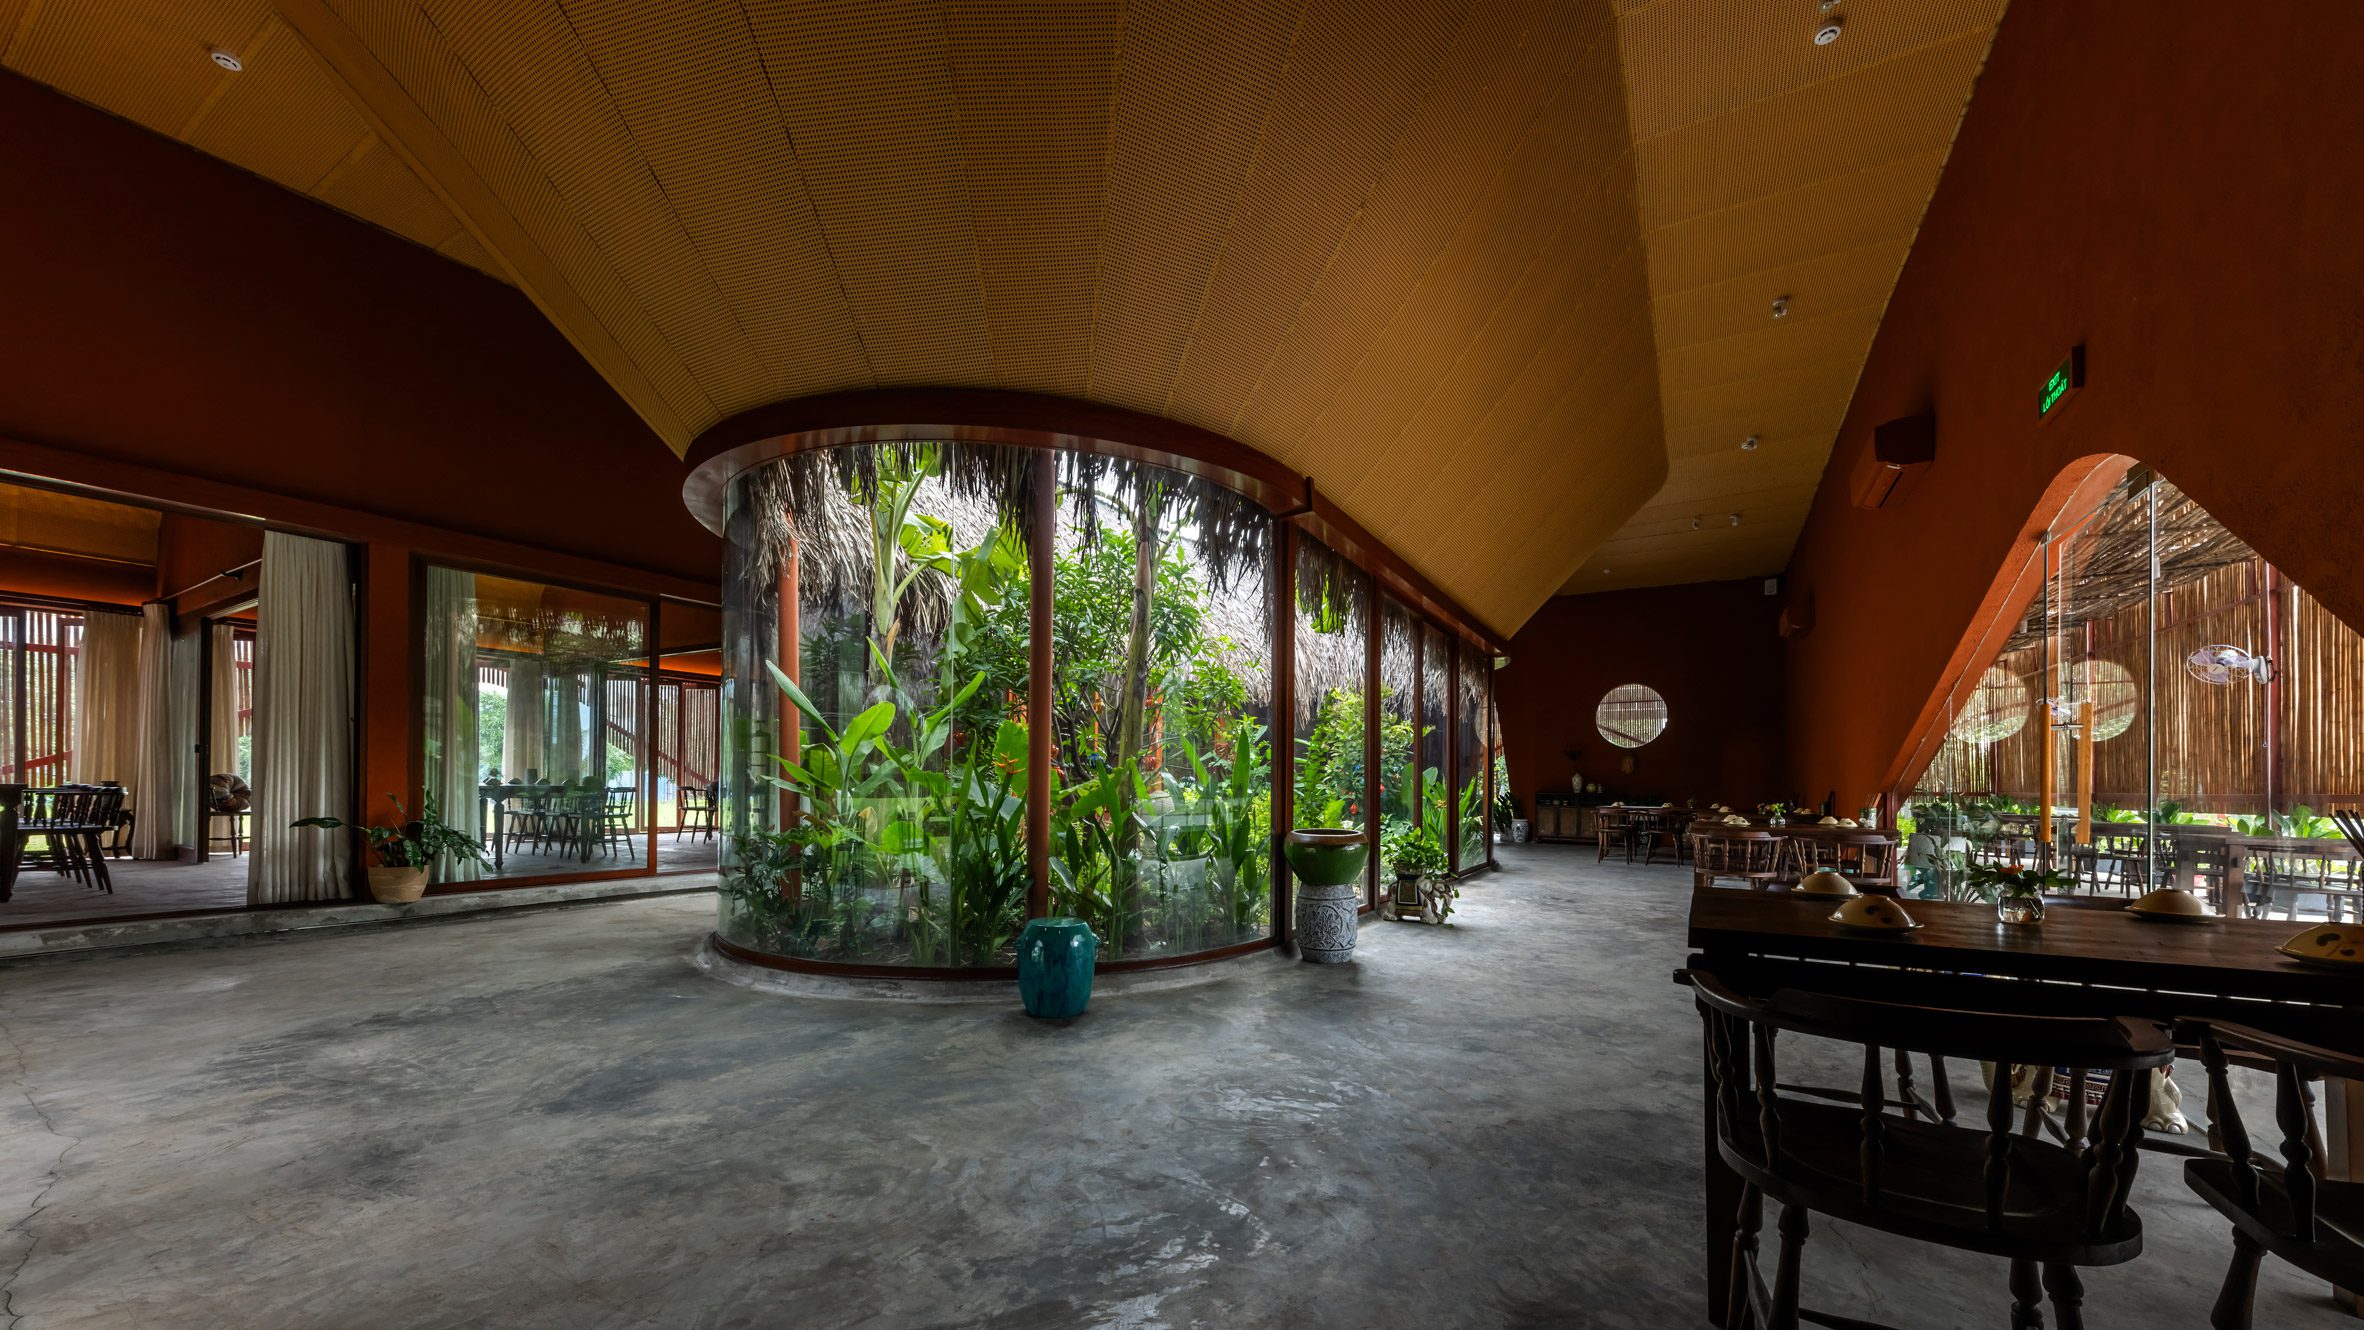 Dining space within Nhà Tú Garden Restaurant in Vietnam